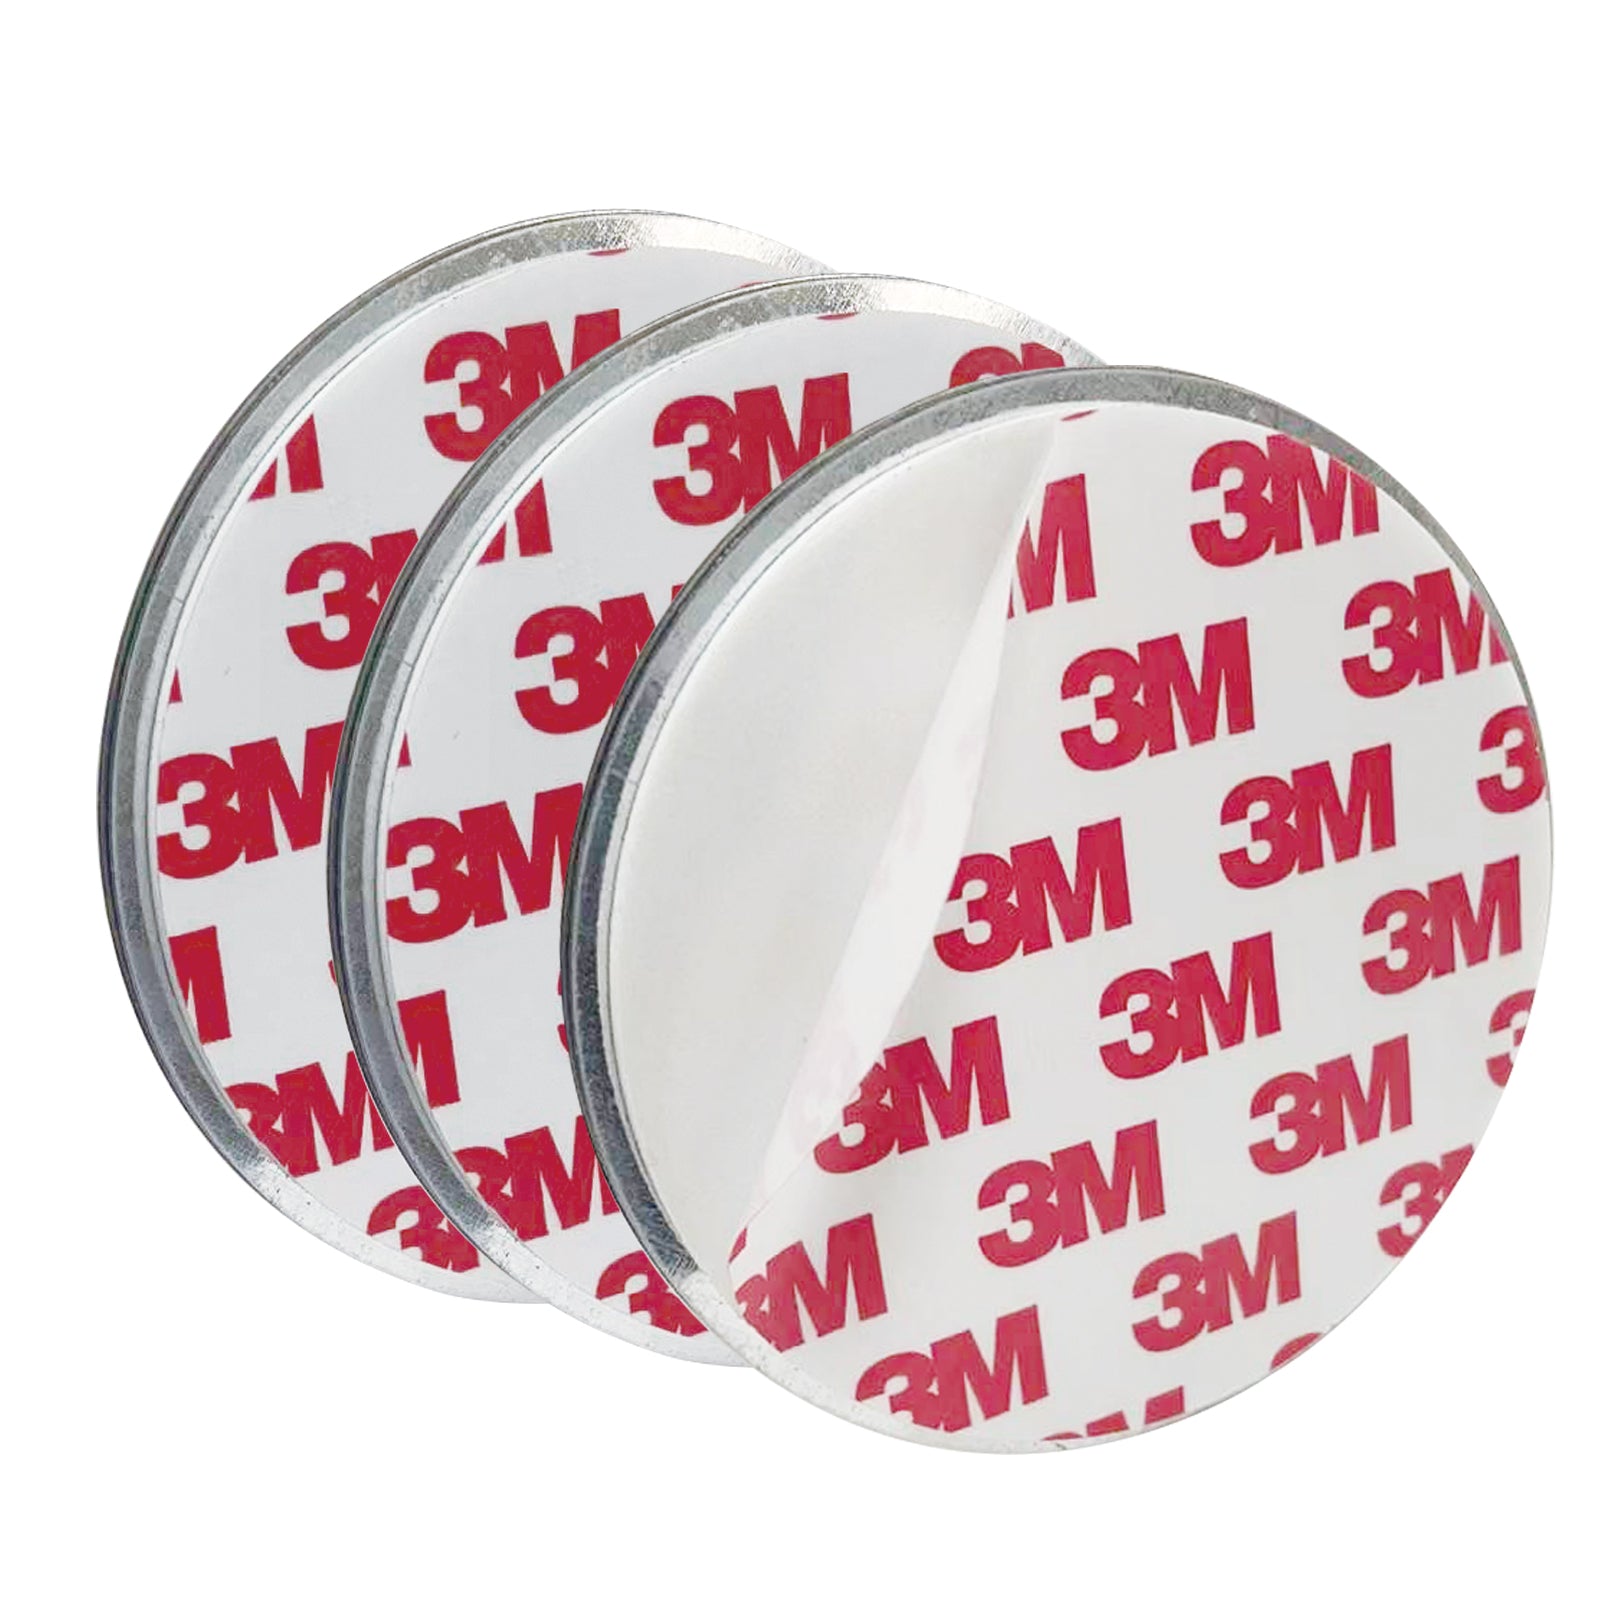 DVM-SA30MR-3: Kolme edistyksellistä savuilmaisinta DVM-SA3MR, kiinteä akku, langaton liitäntä, magneettikiinnitys